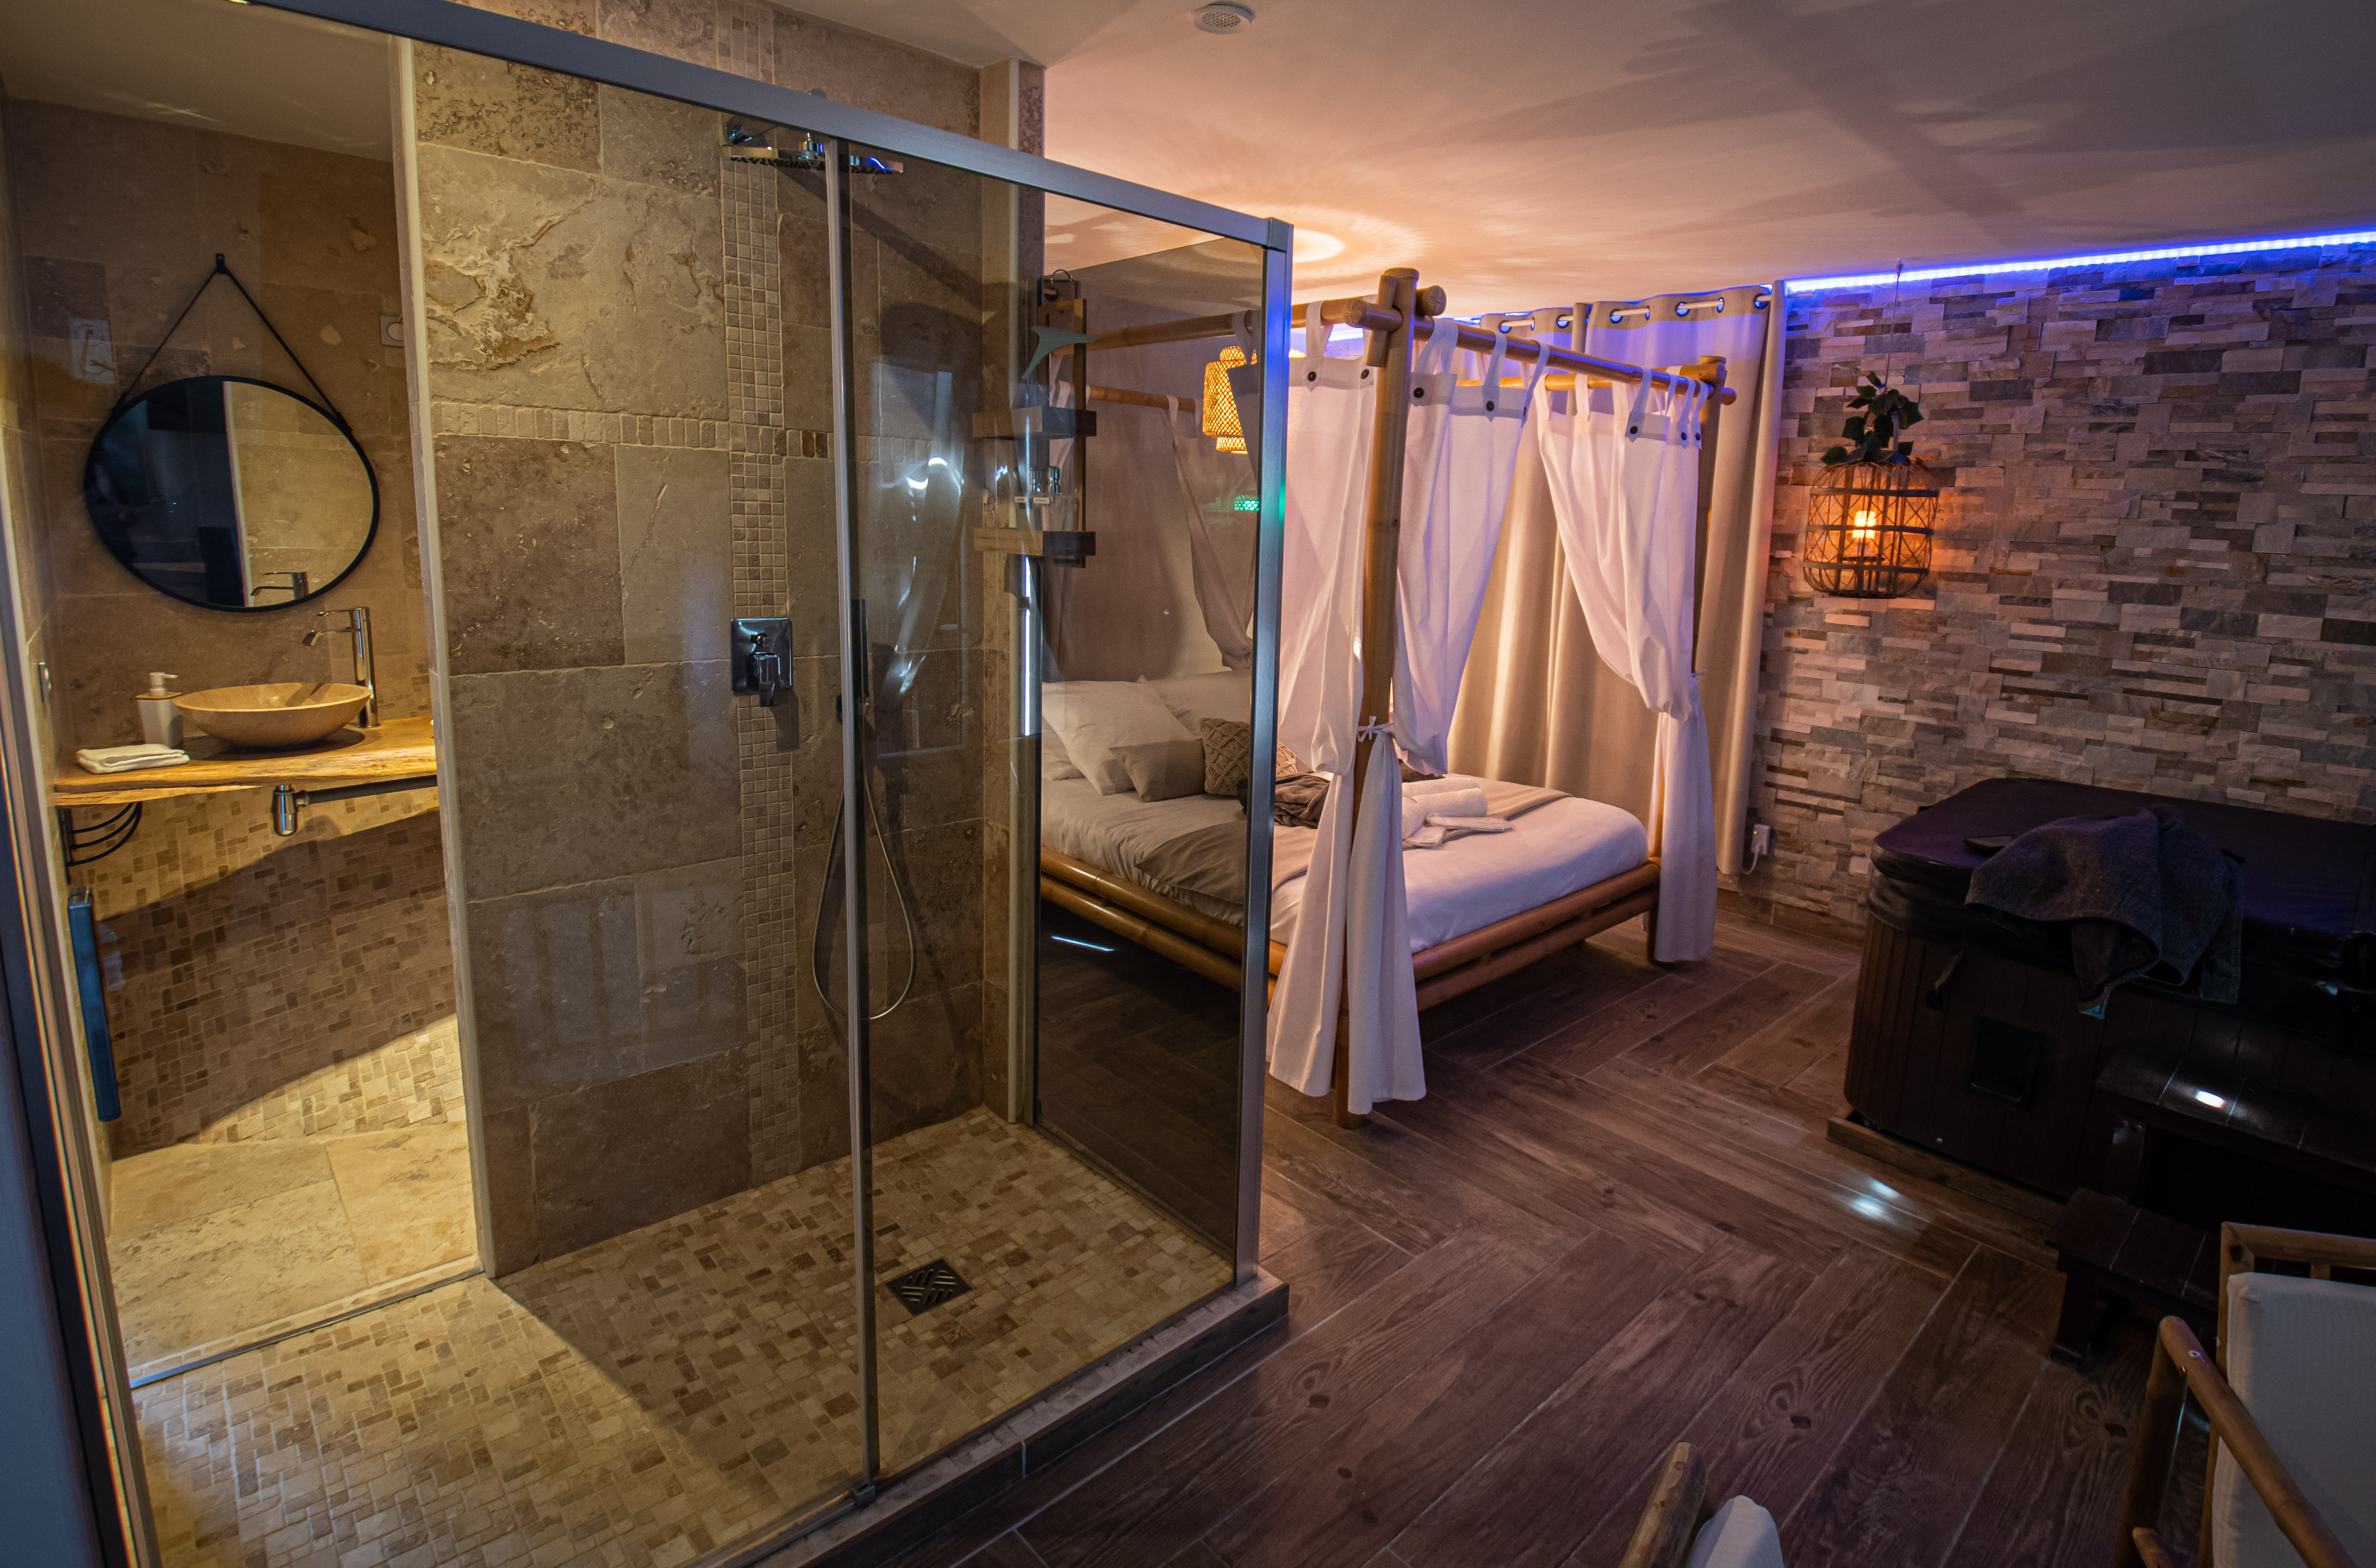 Ô Cocon Spa - Logement romantique avec spa privatif intérieur